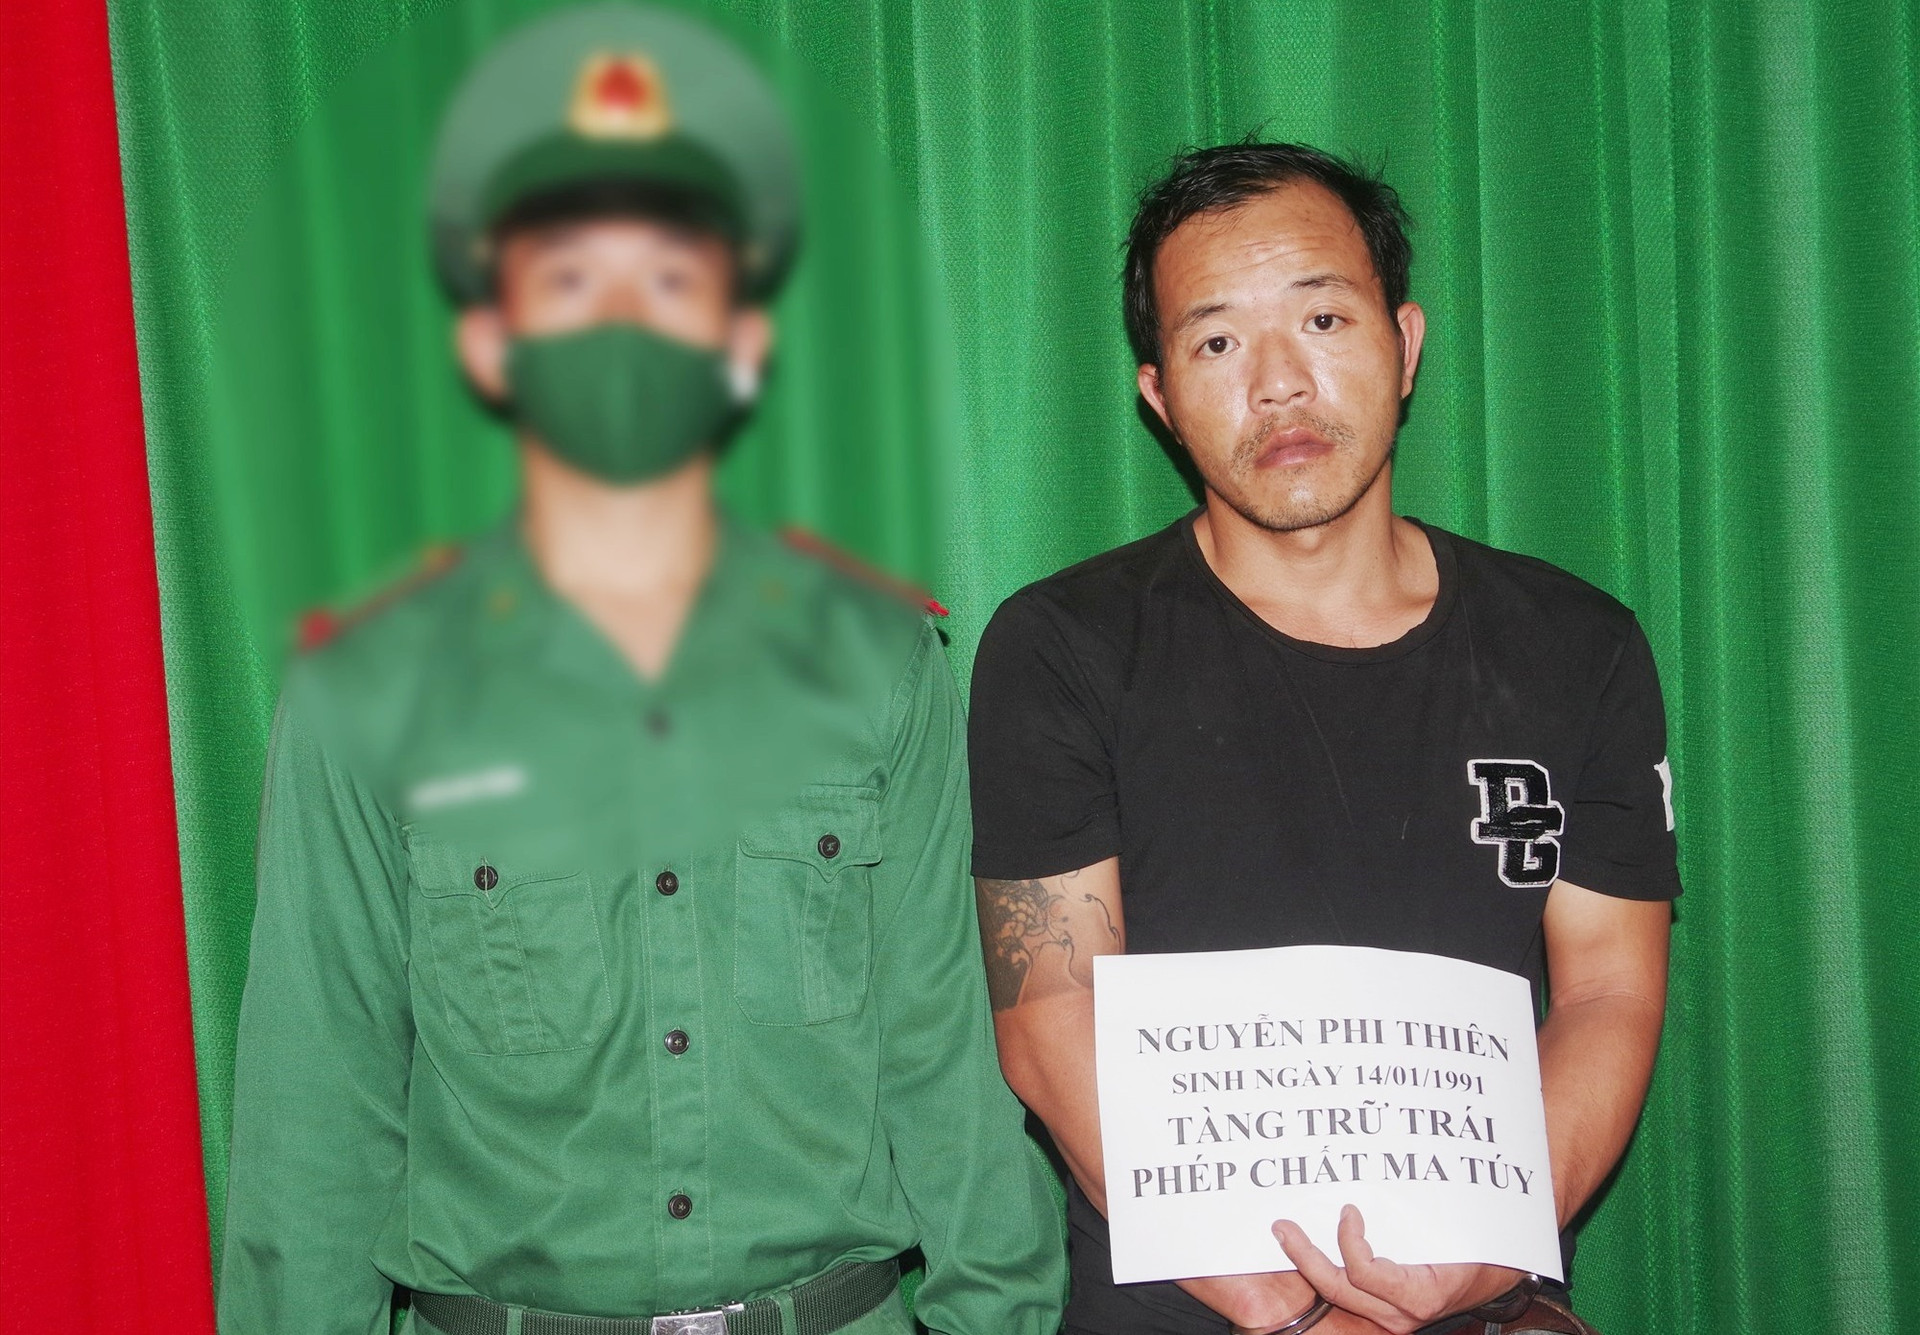 Lực lượng biên phòng bắt đối tượng Nguyễn Phi Thiên về hành vi tàng trữ trái phép chất ma túy. Ảnh: H.A